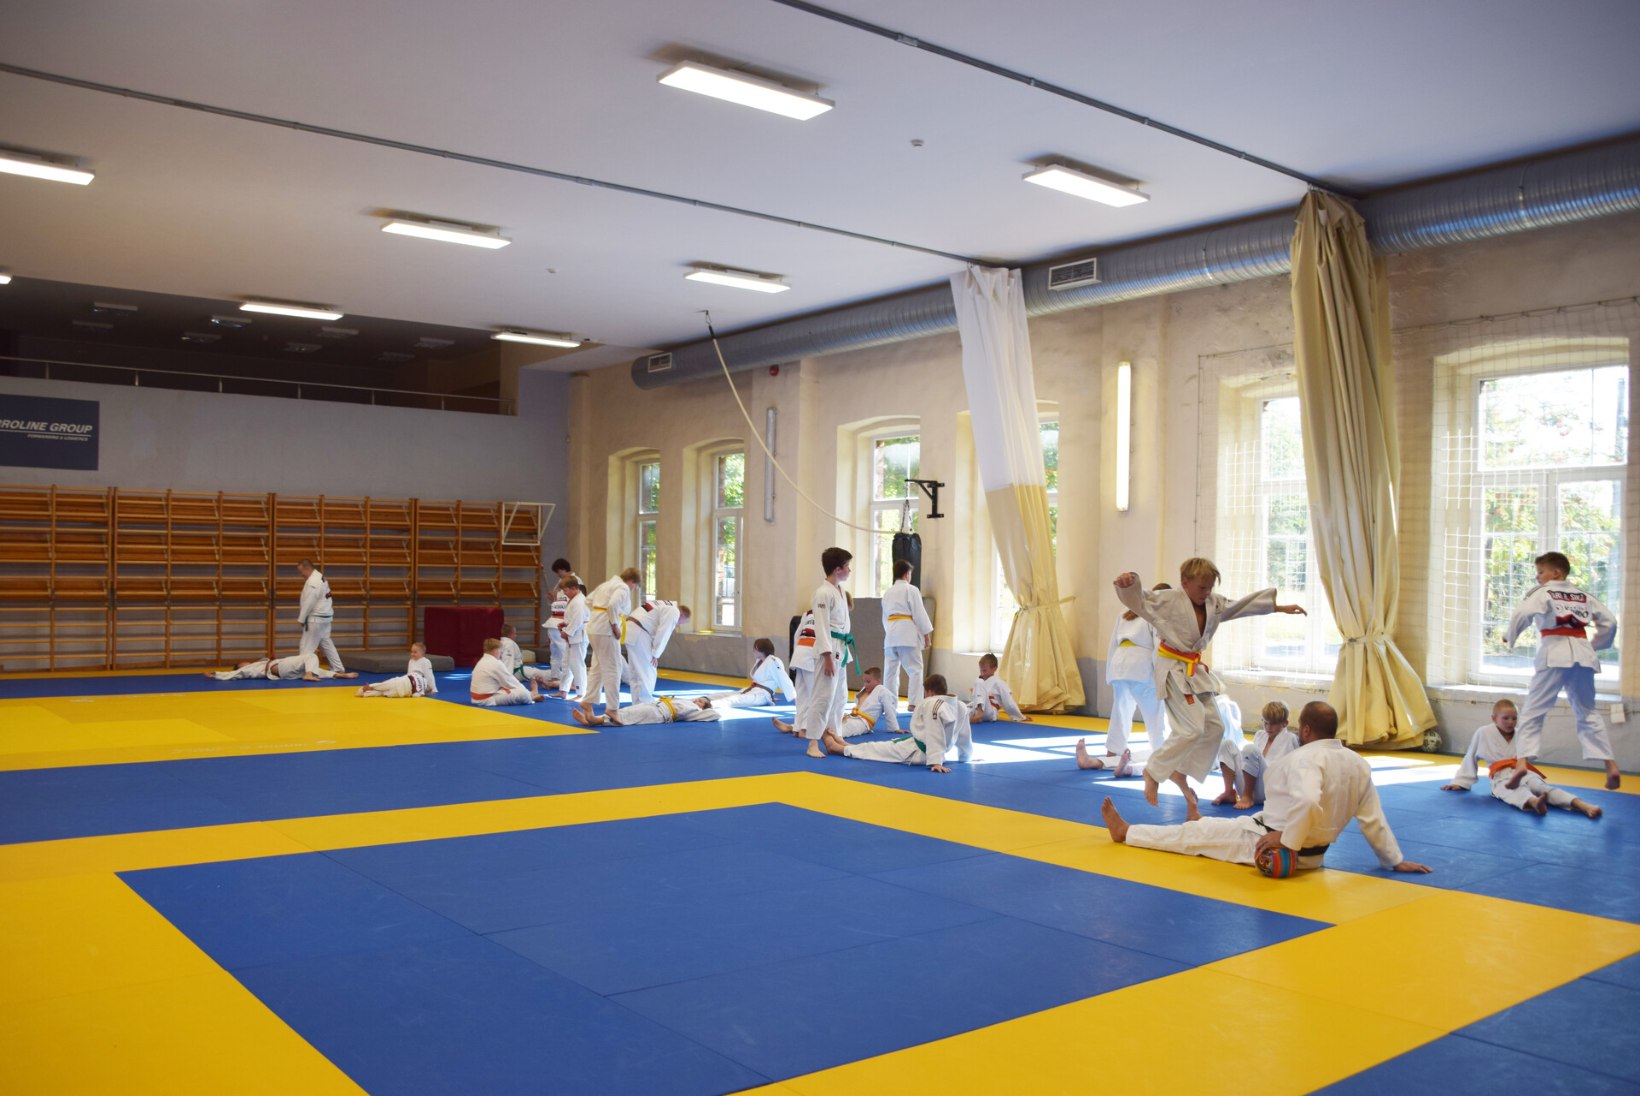 Sügisest judotrenni! Miks on judo parim spordiala, millega laps võiks alustada?